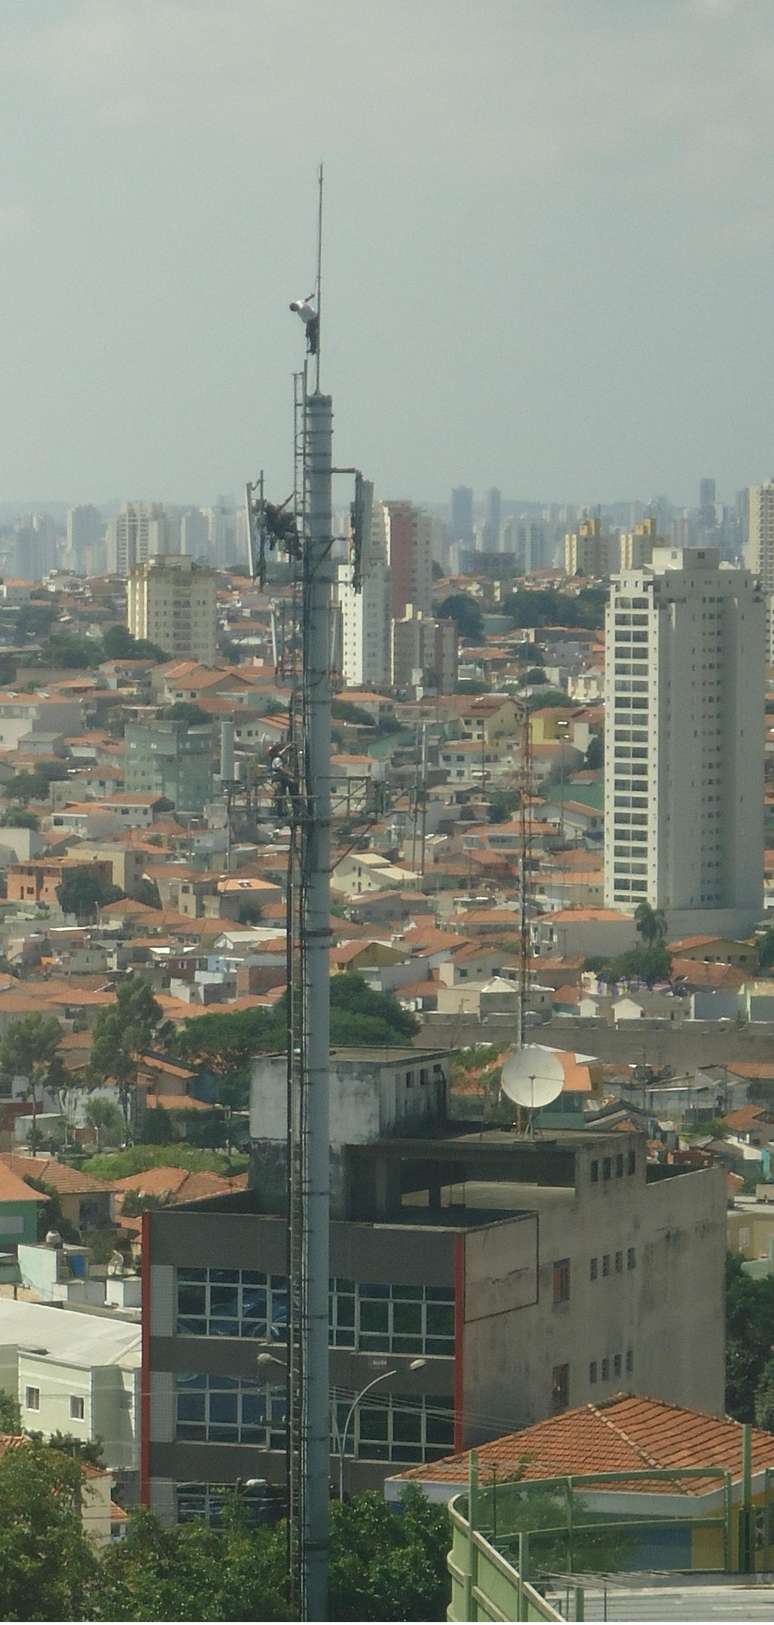 <p>Torre de telefonia fica na altura do número 200 da avenida Tucuruvi, zona norte de São Paulo</p>